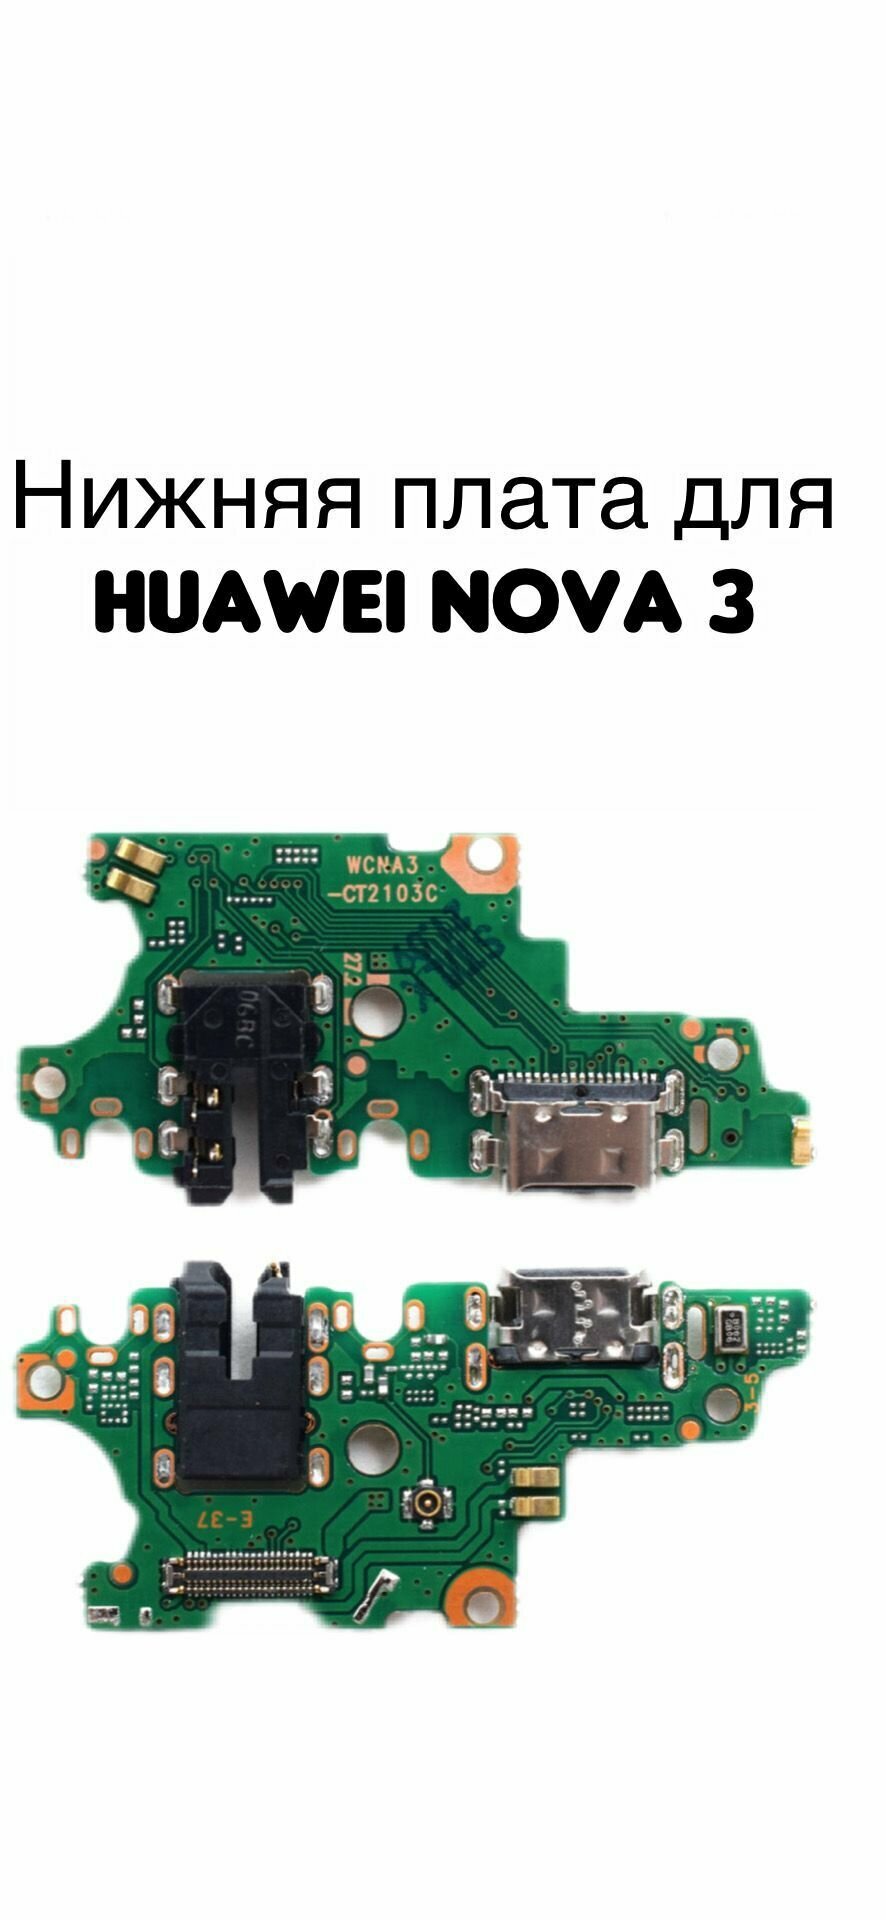 Нижняя плата для Huawei Nova 3 (PAR-LX1) с разъемом зарядки гарнитуры и микрофоном